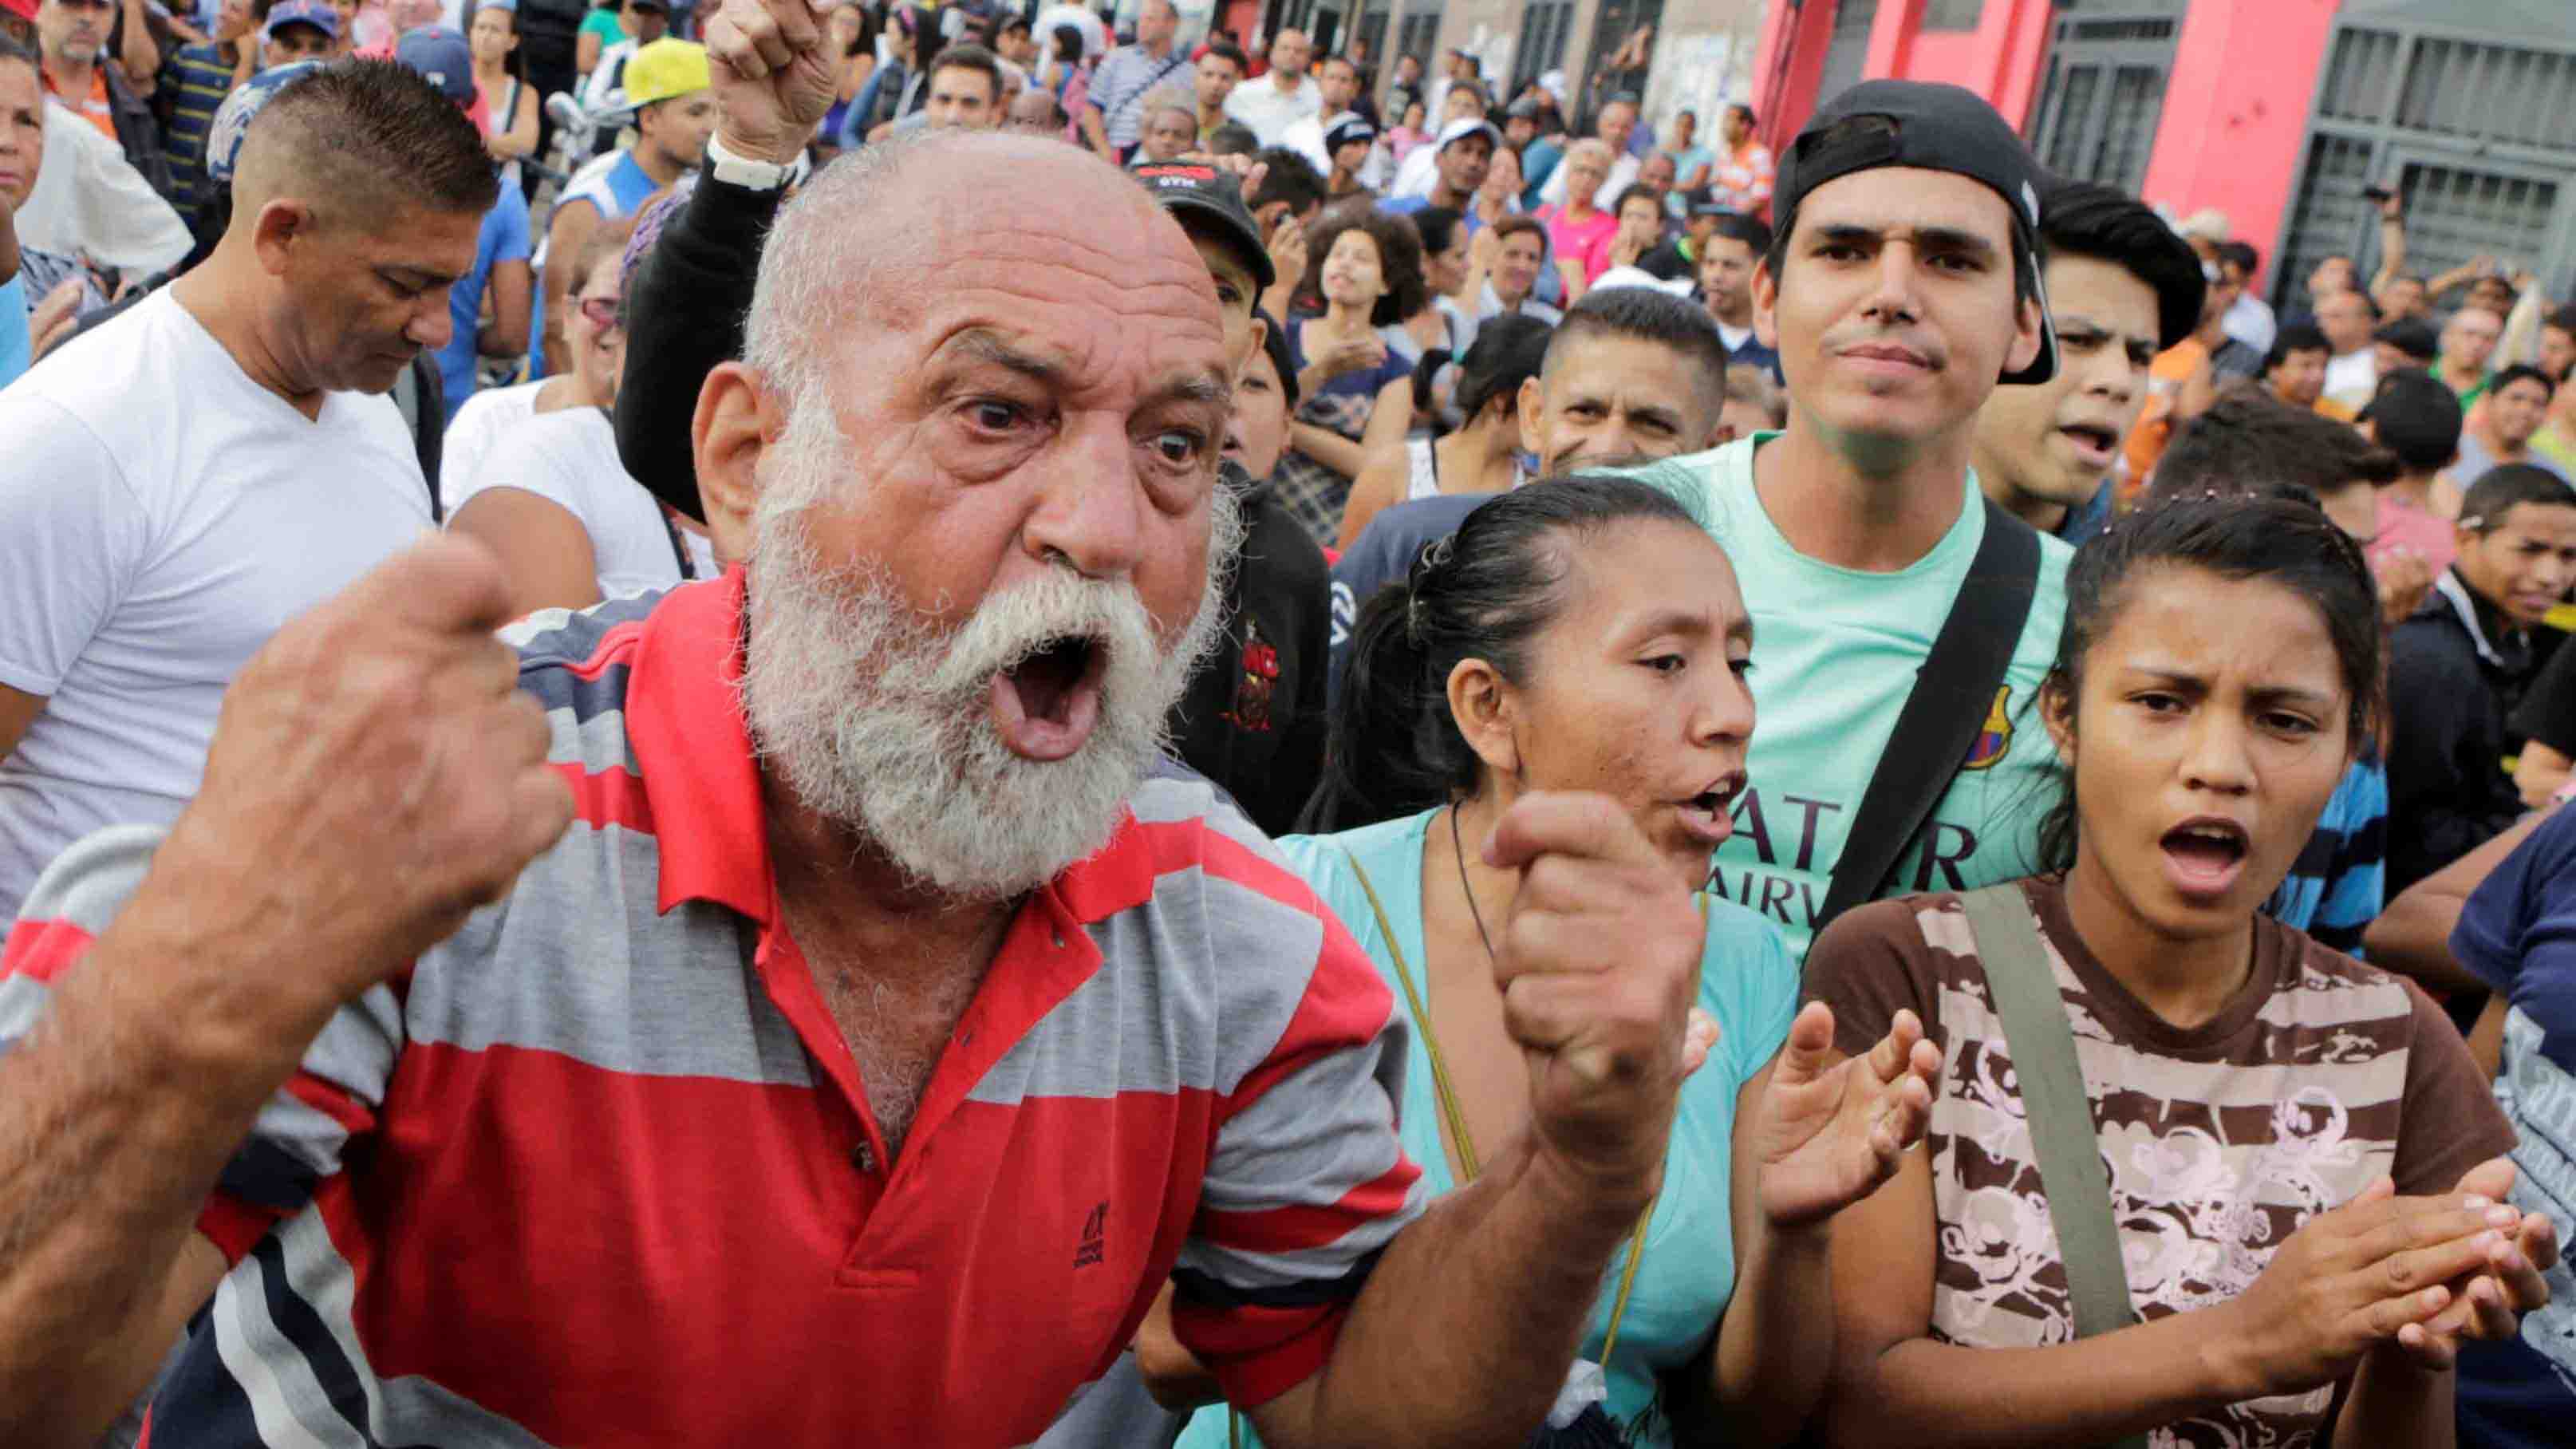 DOBLE LLAVE - El Observatorio Venezolano de Conflictividad Social indicó que este año la exigencia en las calles se debe a la falta de suministros básicos